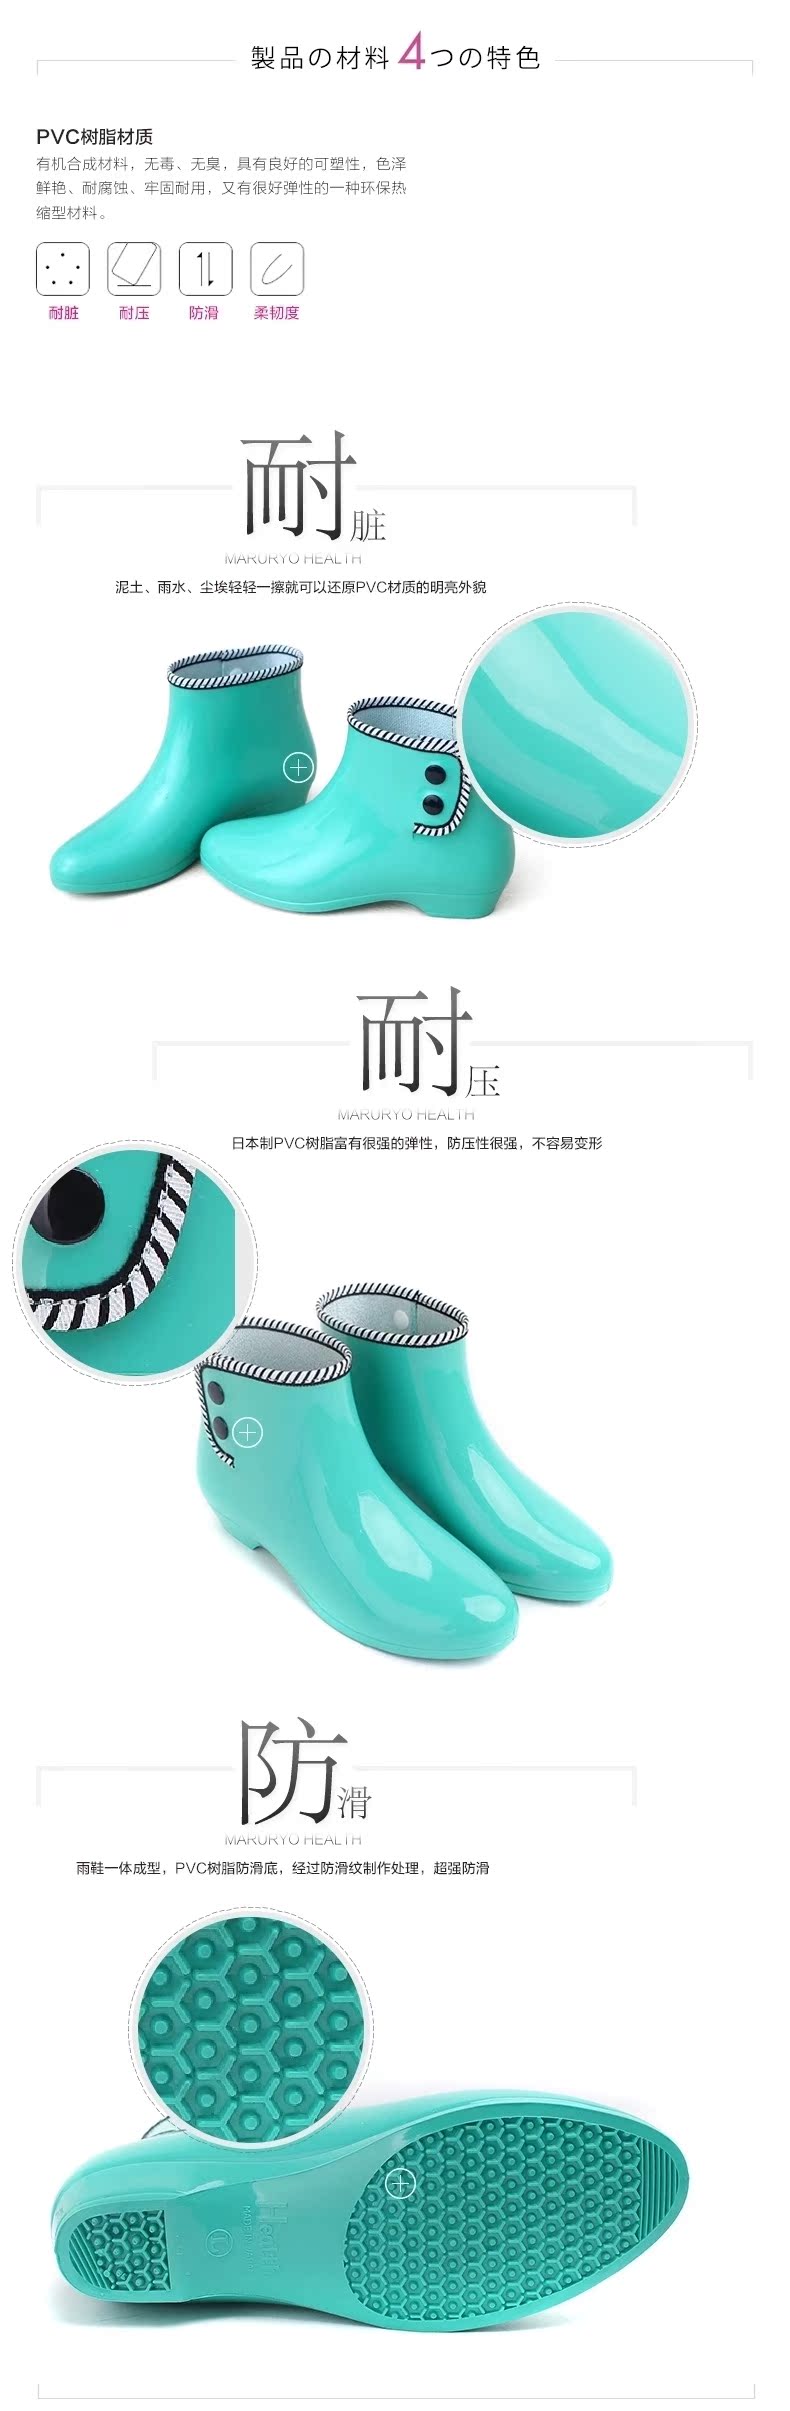 Chaussures en caoutchouc japonais - Ref 932217 Image 13